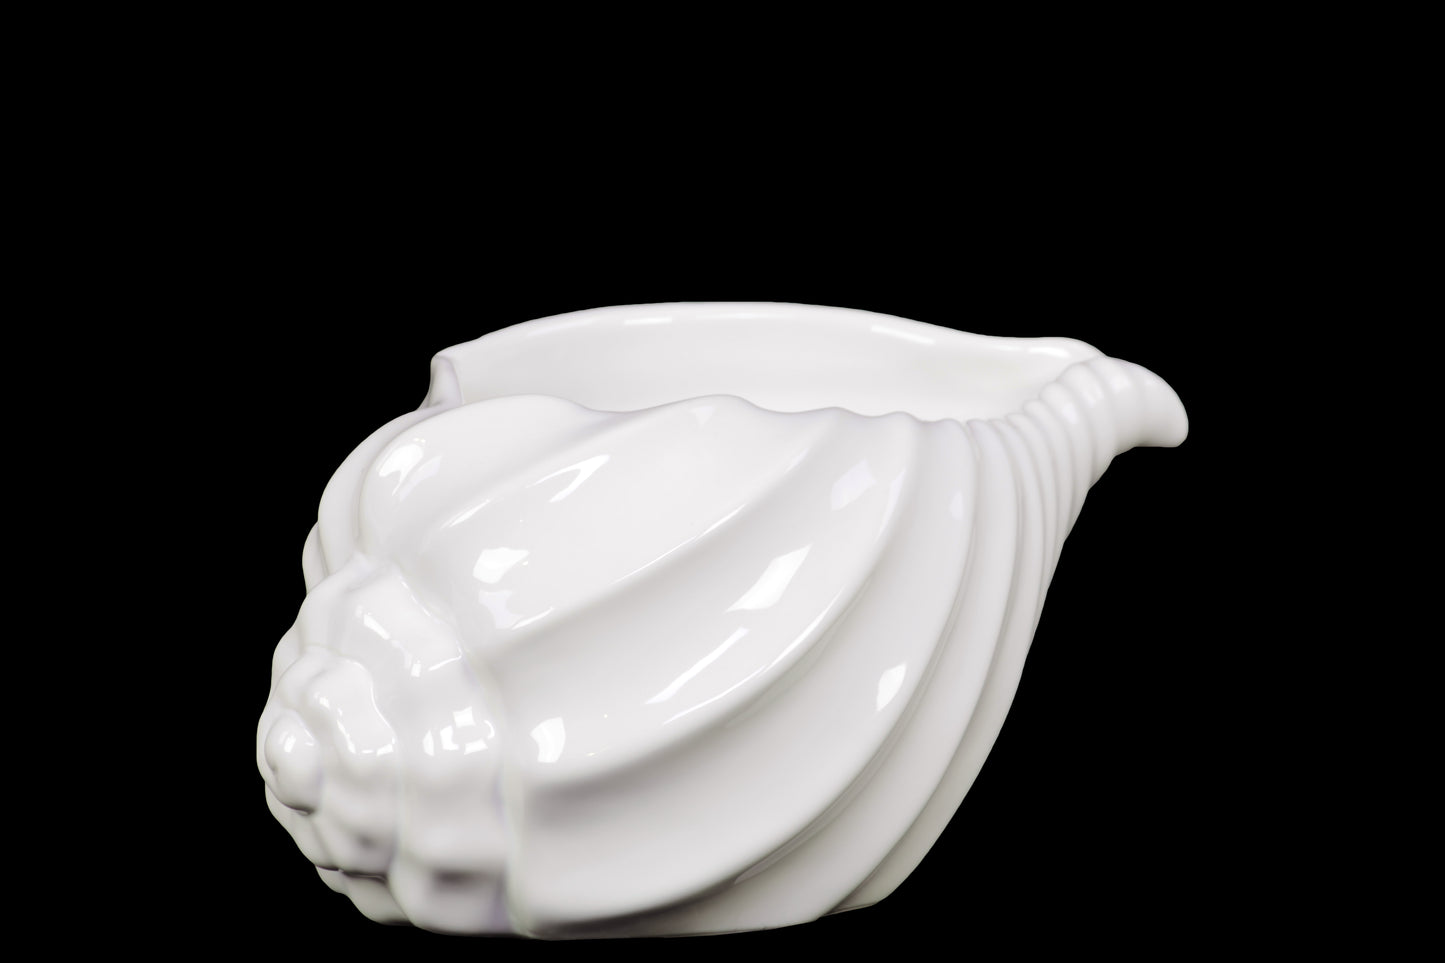 5" Ceramic Conch Seashell Figurine